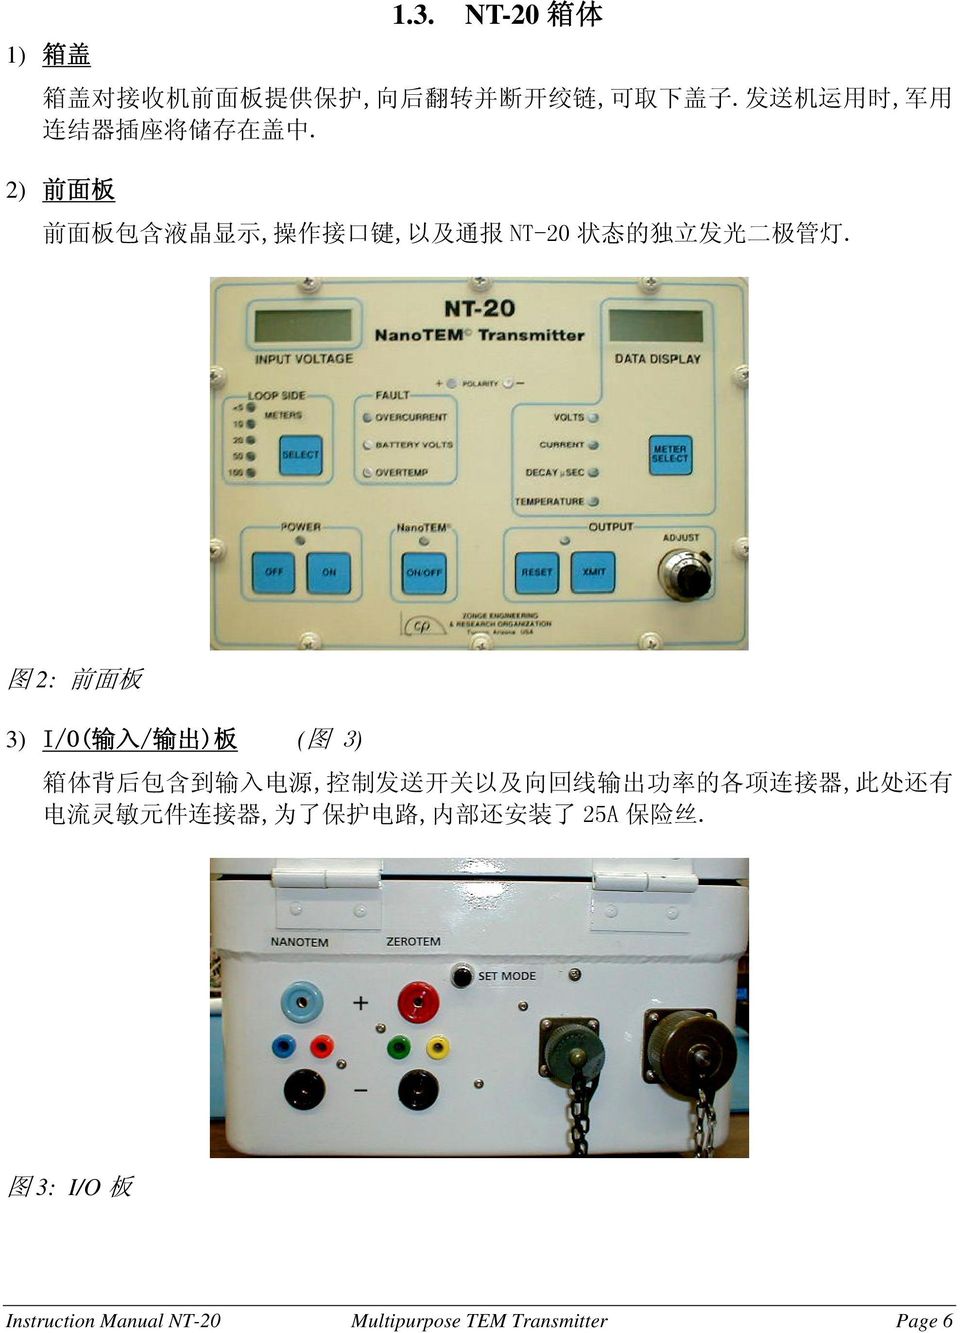 2) 前 面 板 前 面 板 包 含 液 晶 显 示, 操 作 接 口 键, 以 及 通 报 NT-20 状 态 的 独 立 发 光 二 极 管 灯.